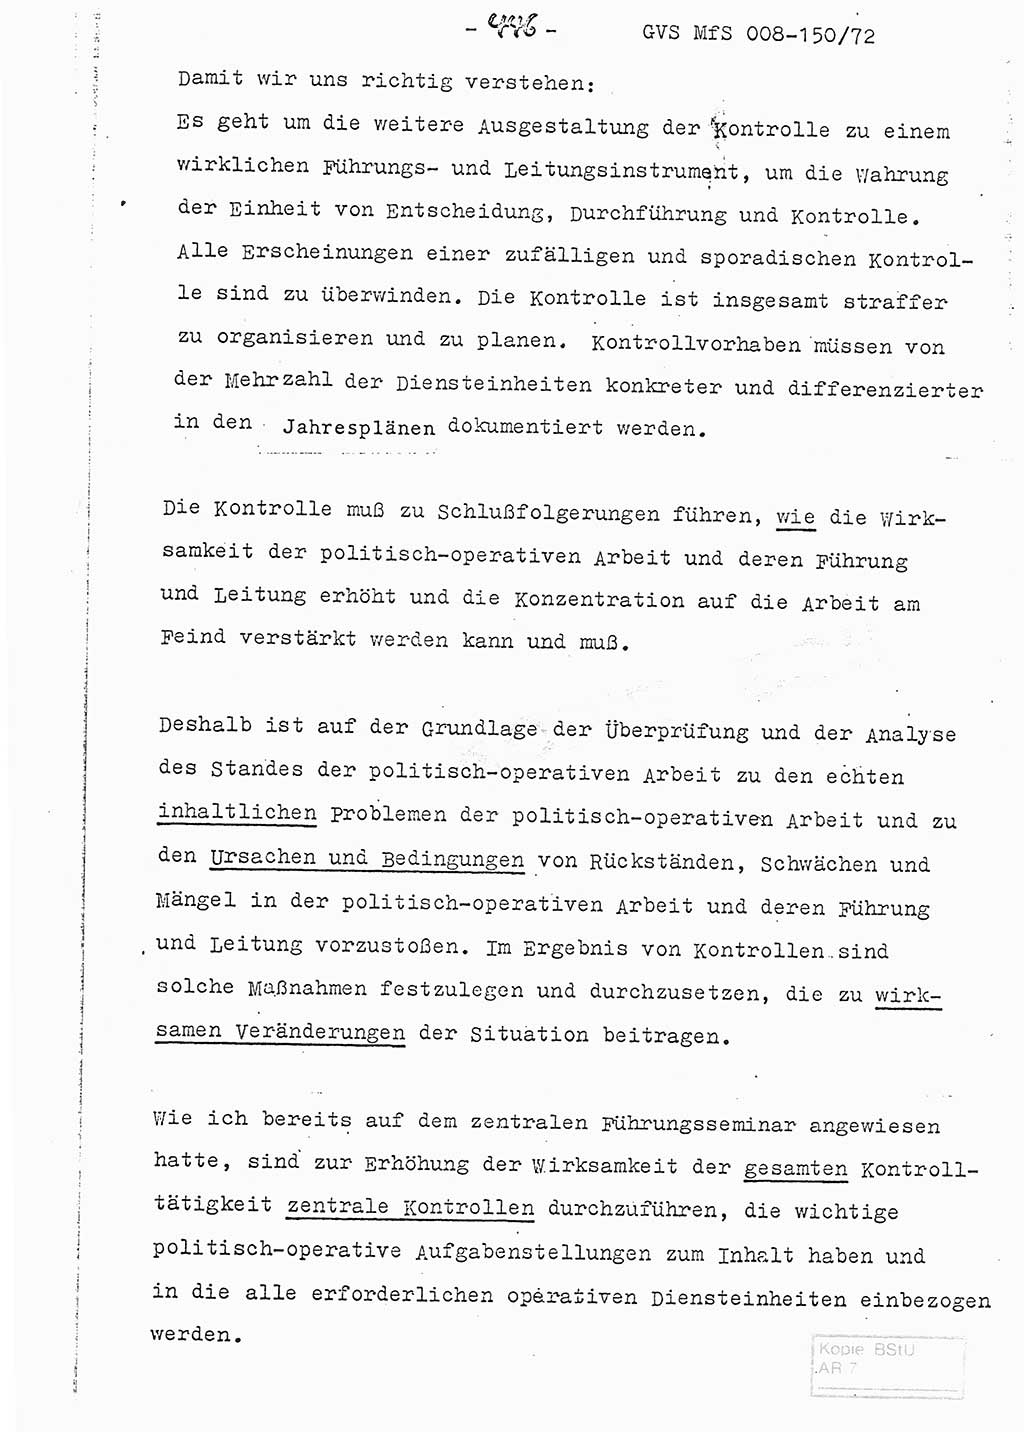 Referat (Entwurf) des Genossen Minister (Generaloberst Erich Mielke) auf der Dienstkonferenz 1972, Ministerium für Staatssicherheit (MfS) [Deutsche Demokratische Republik (DDR)], Der Minister, Geheime Verschlußsache (GVS) 008-150/72, Berlin 25.2.1972, Seite 446 (Ref. Entw. DK MfS DDR Min. GVS 008-150/72 1972, S. 446)